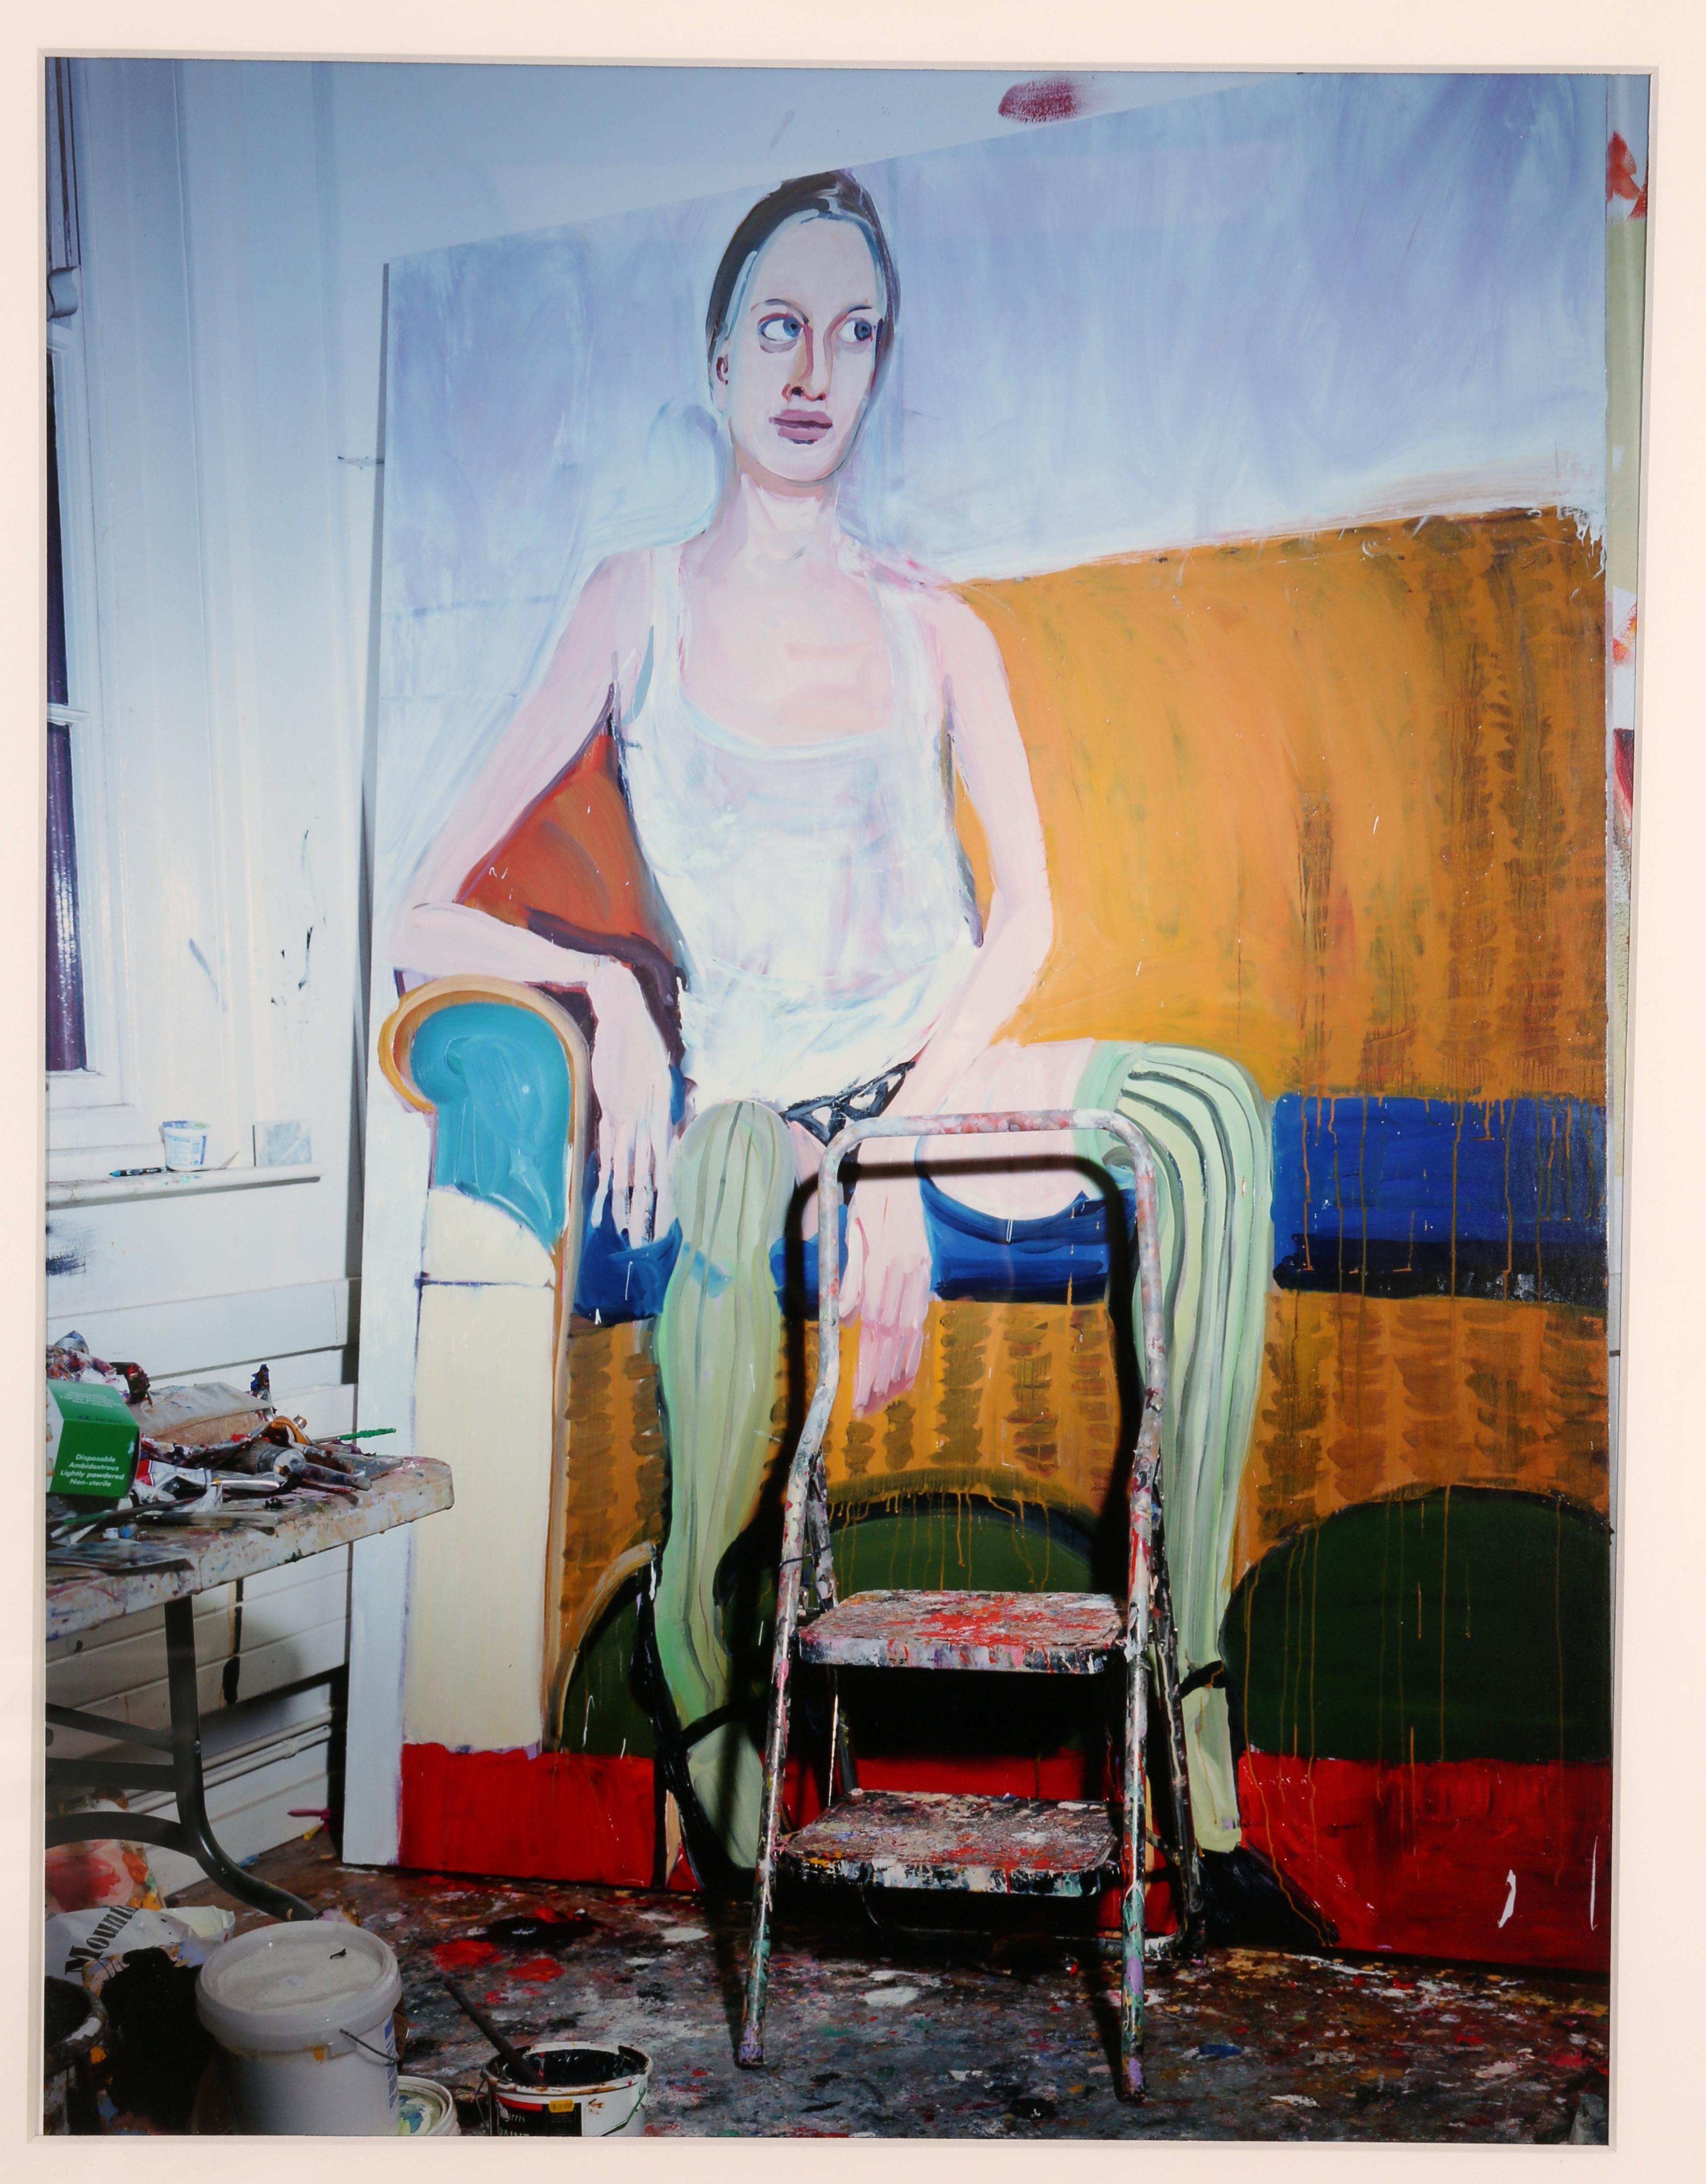 Portrait Photograph Miles Aldridge - Kristen, Peinture de Chantal Joffe (de la série Kristen) 